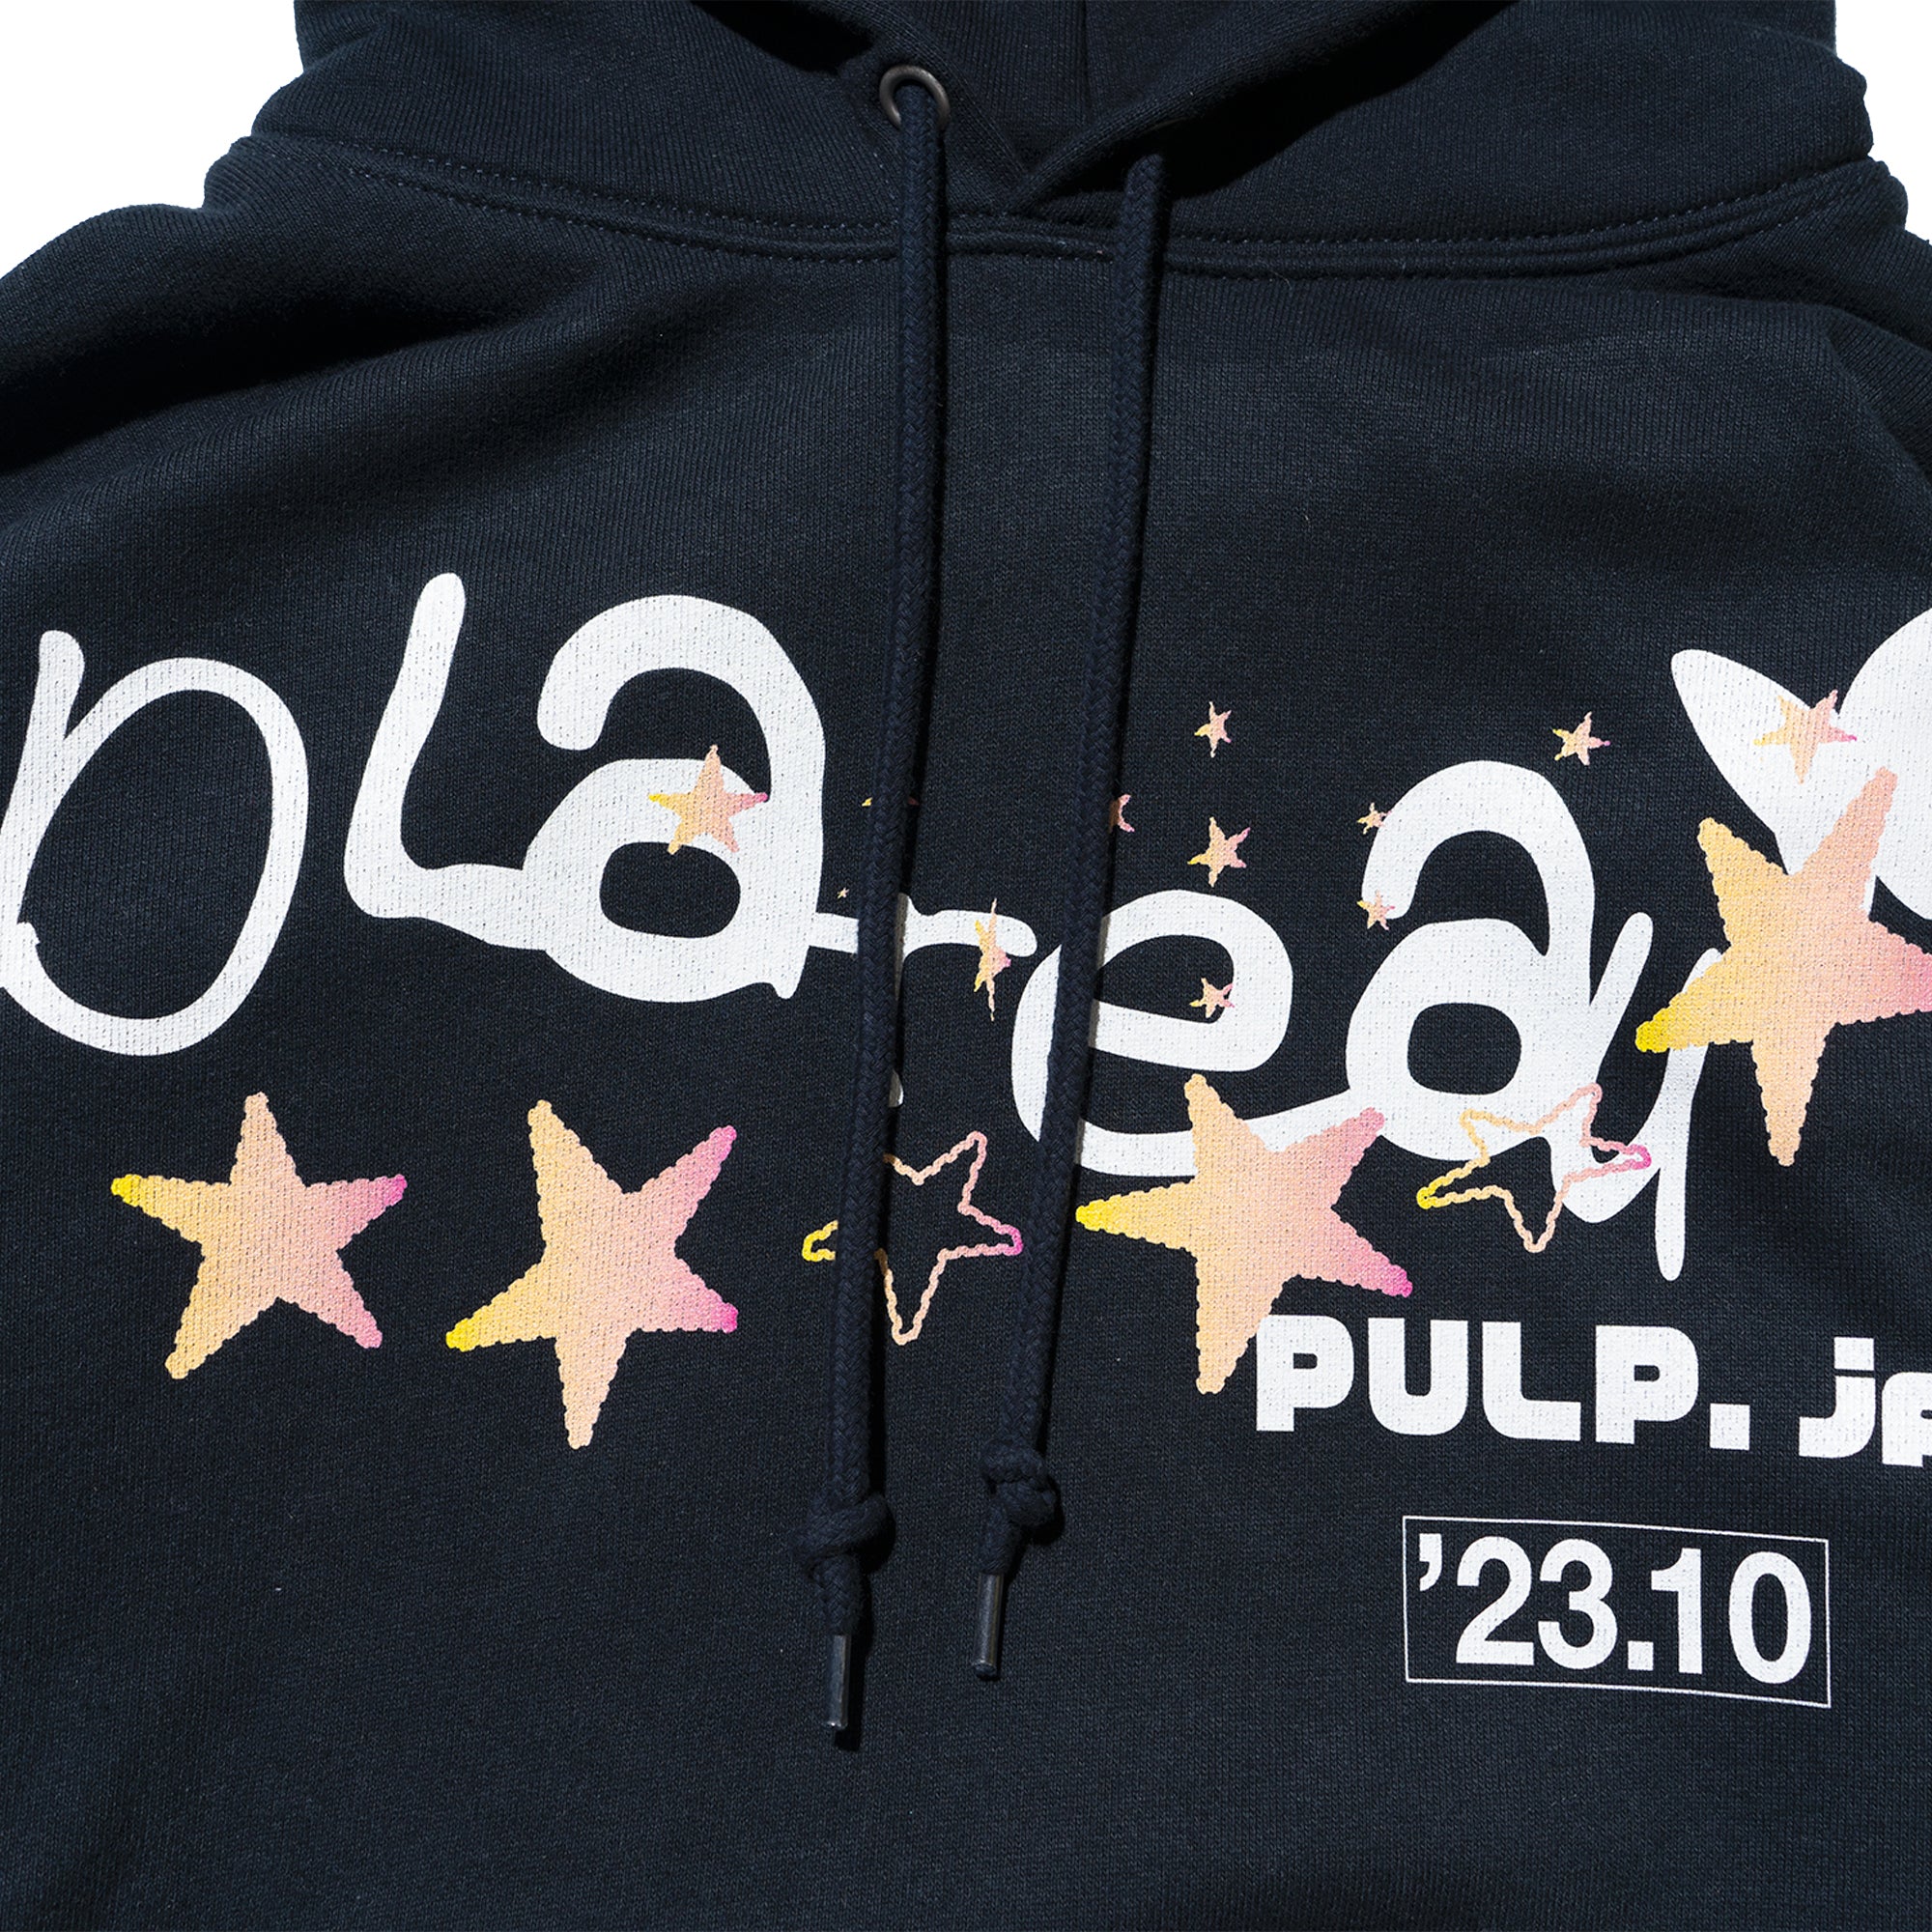 pulp exclusive hoodie